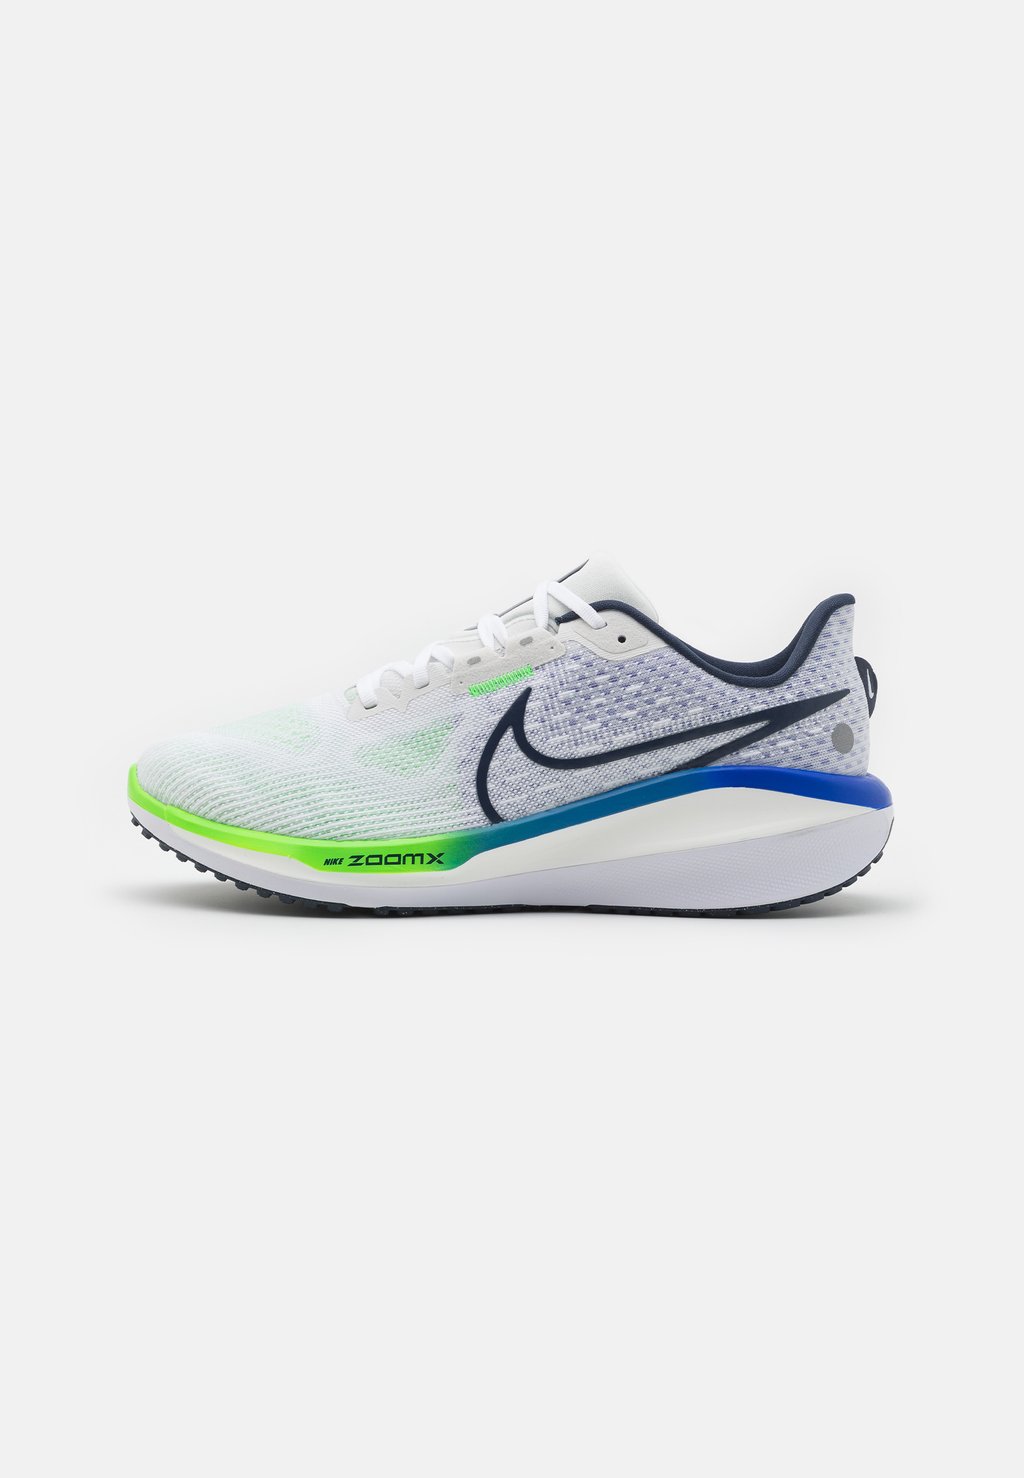 Нейтральные кроссовки Vomero 17 Nike, цвет white/thunder blue/platinum tint/racer blue/green strike